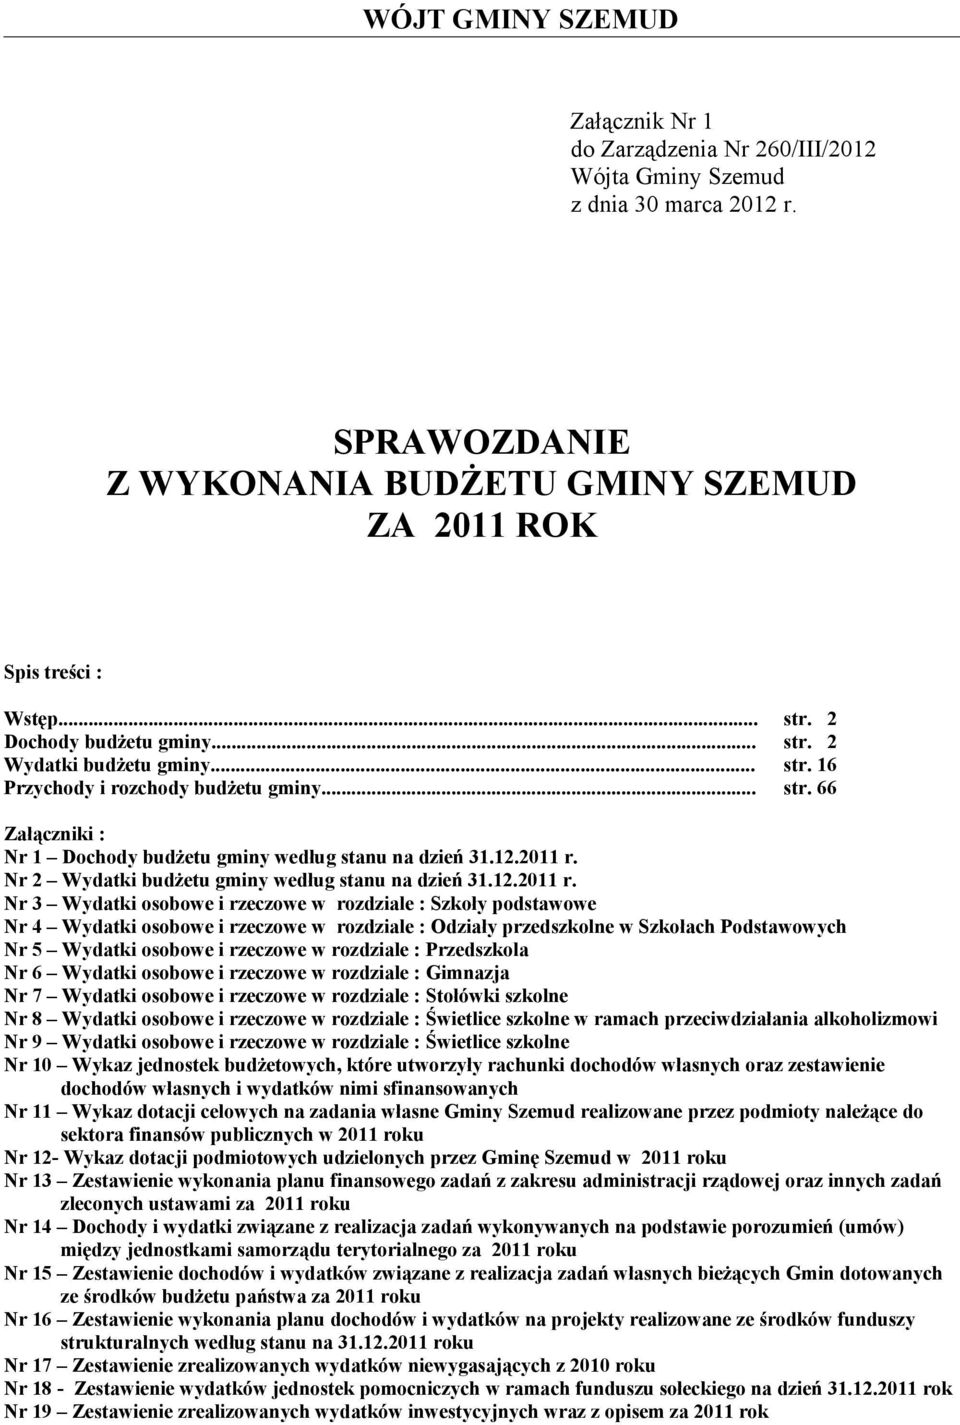 Nr 2 Wydatki budżetu gminy według stanu na dzień 31.12.2011 r.